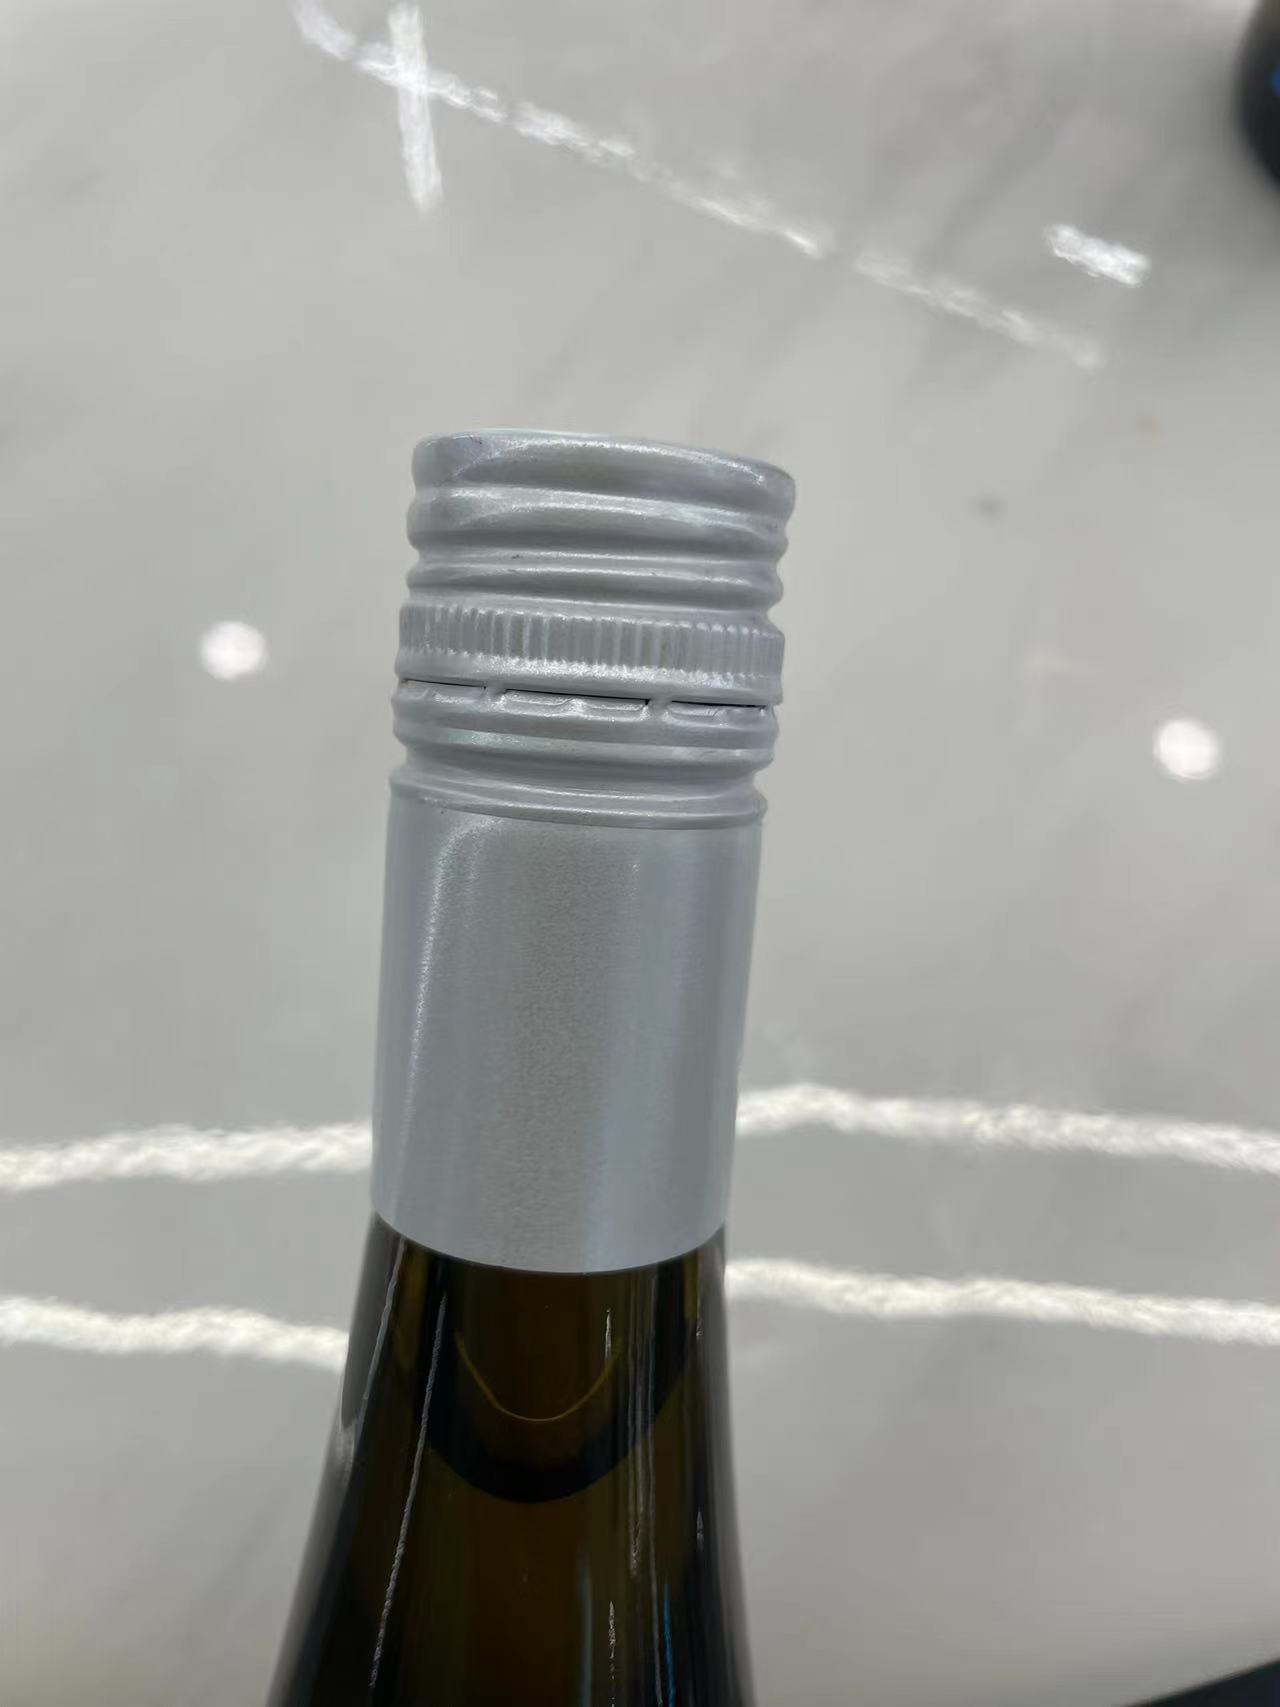 莫泽园 雷司令冰白葡萄酒 原瓶原装进口 11度白葡萄酒 750ml/瓶 单瓶装晒单图